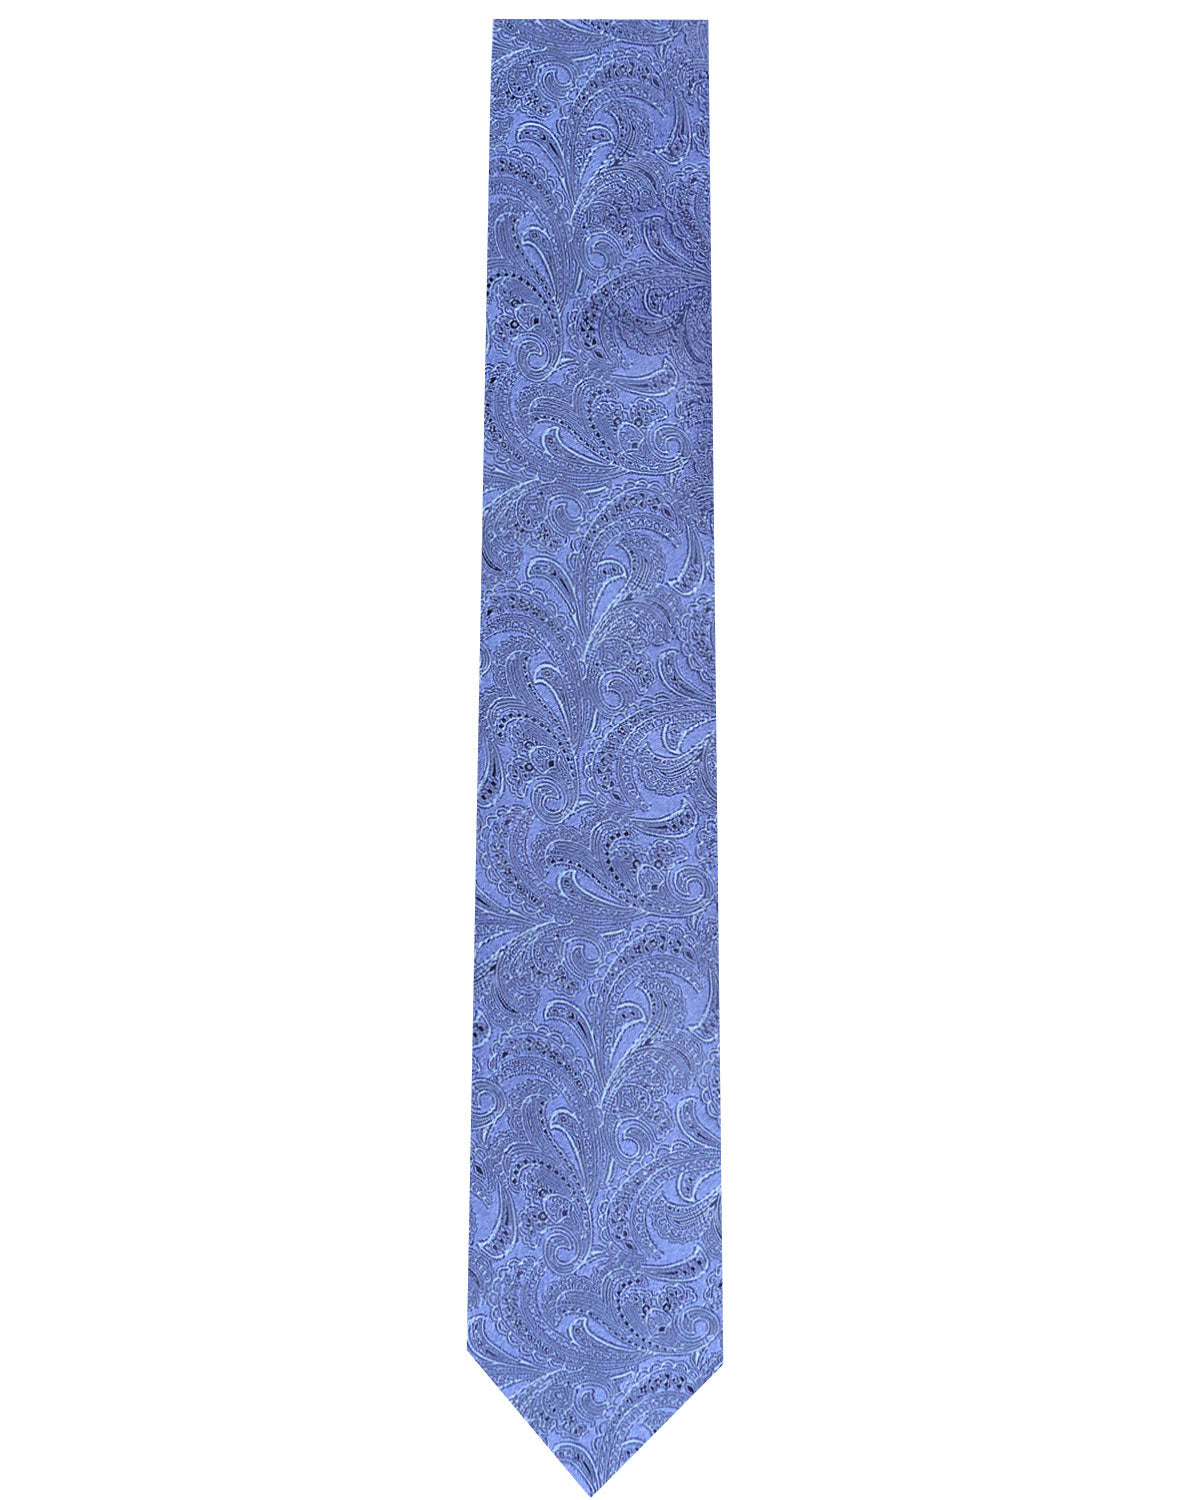 Denim Blue Silk Tie